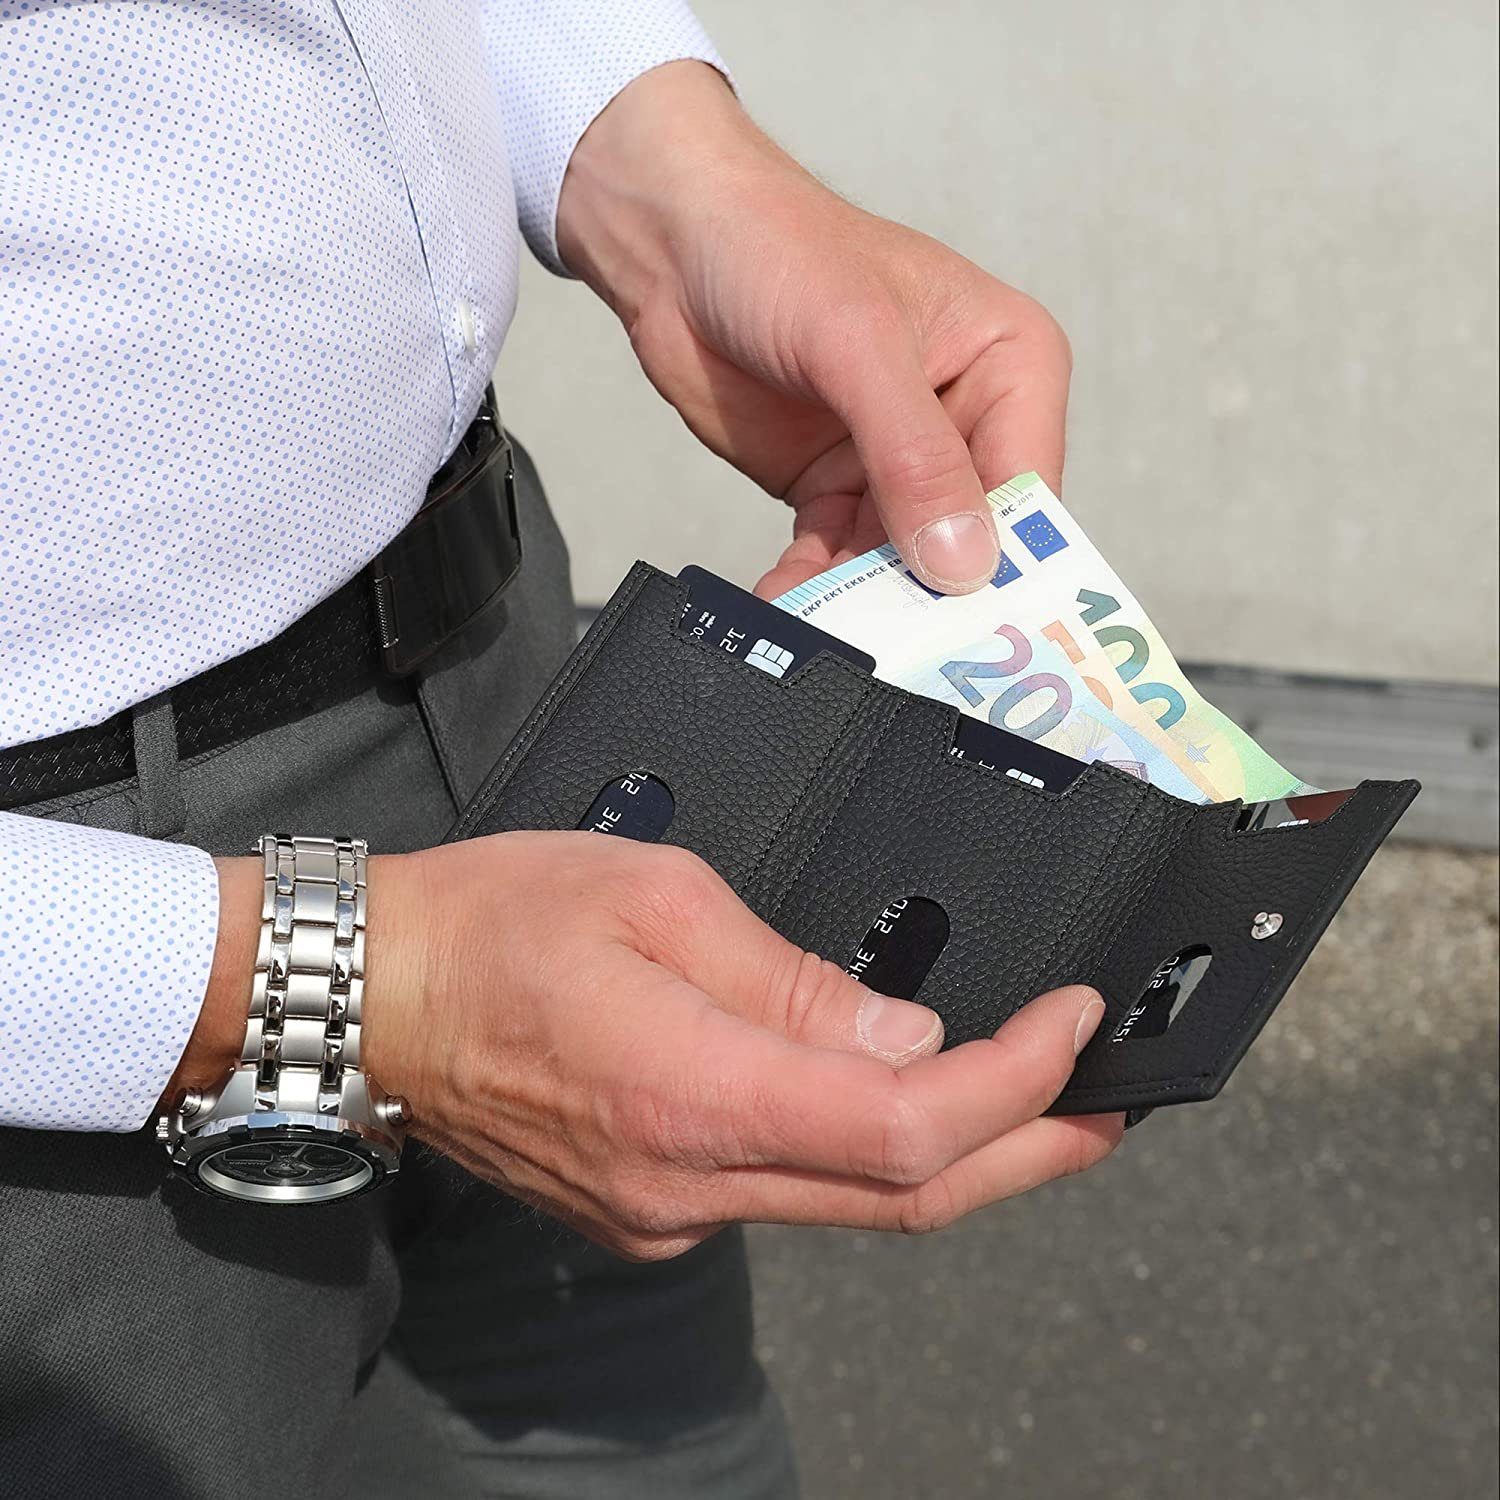 [12 Riga Slim Schutz, Slimwallet Münzfach echt in Solo Brieftasche Leder, Macde Wallet Europe [RFID-Schutz], RFID Karten] Matt Pelle Schwarz mit